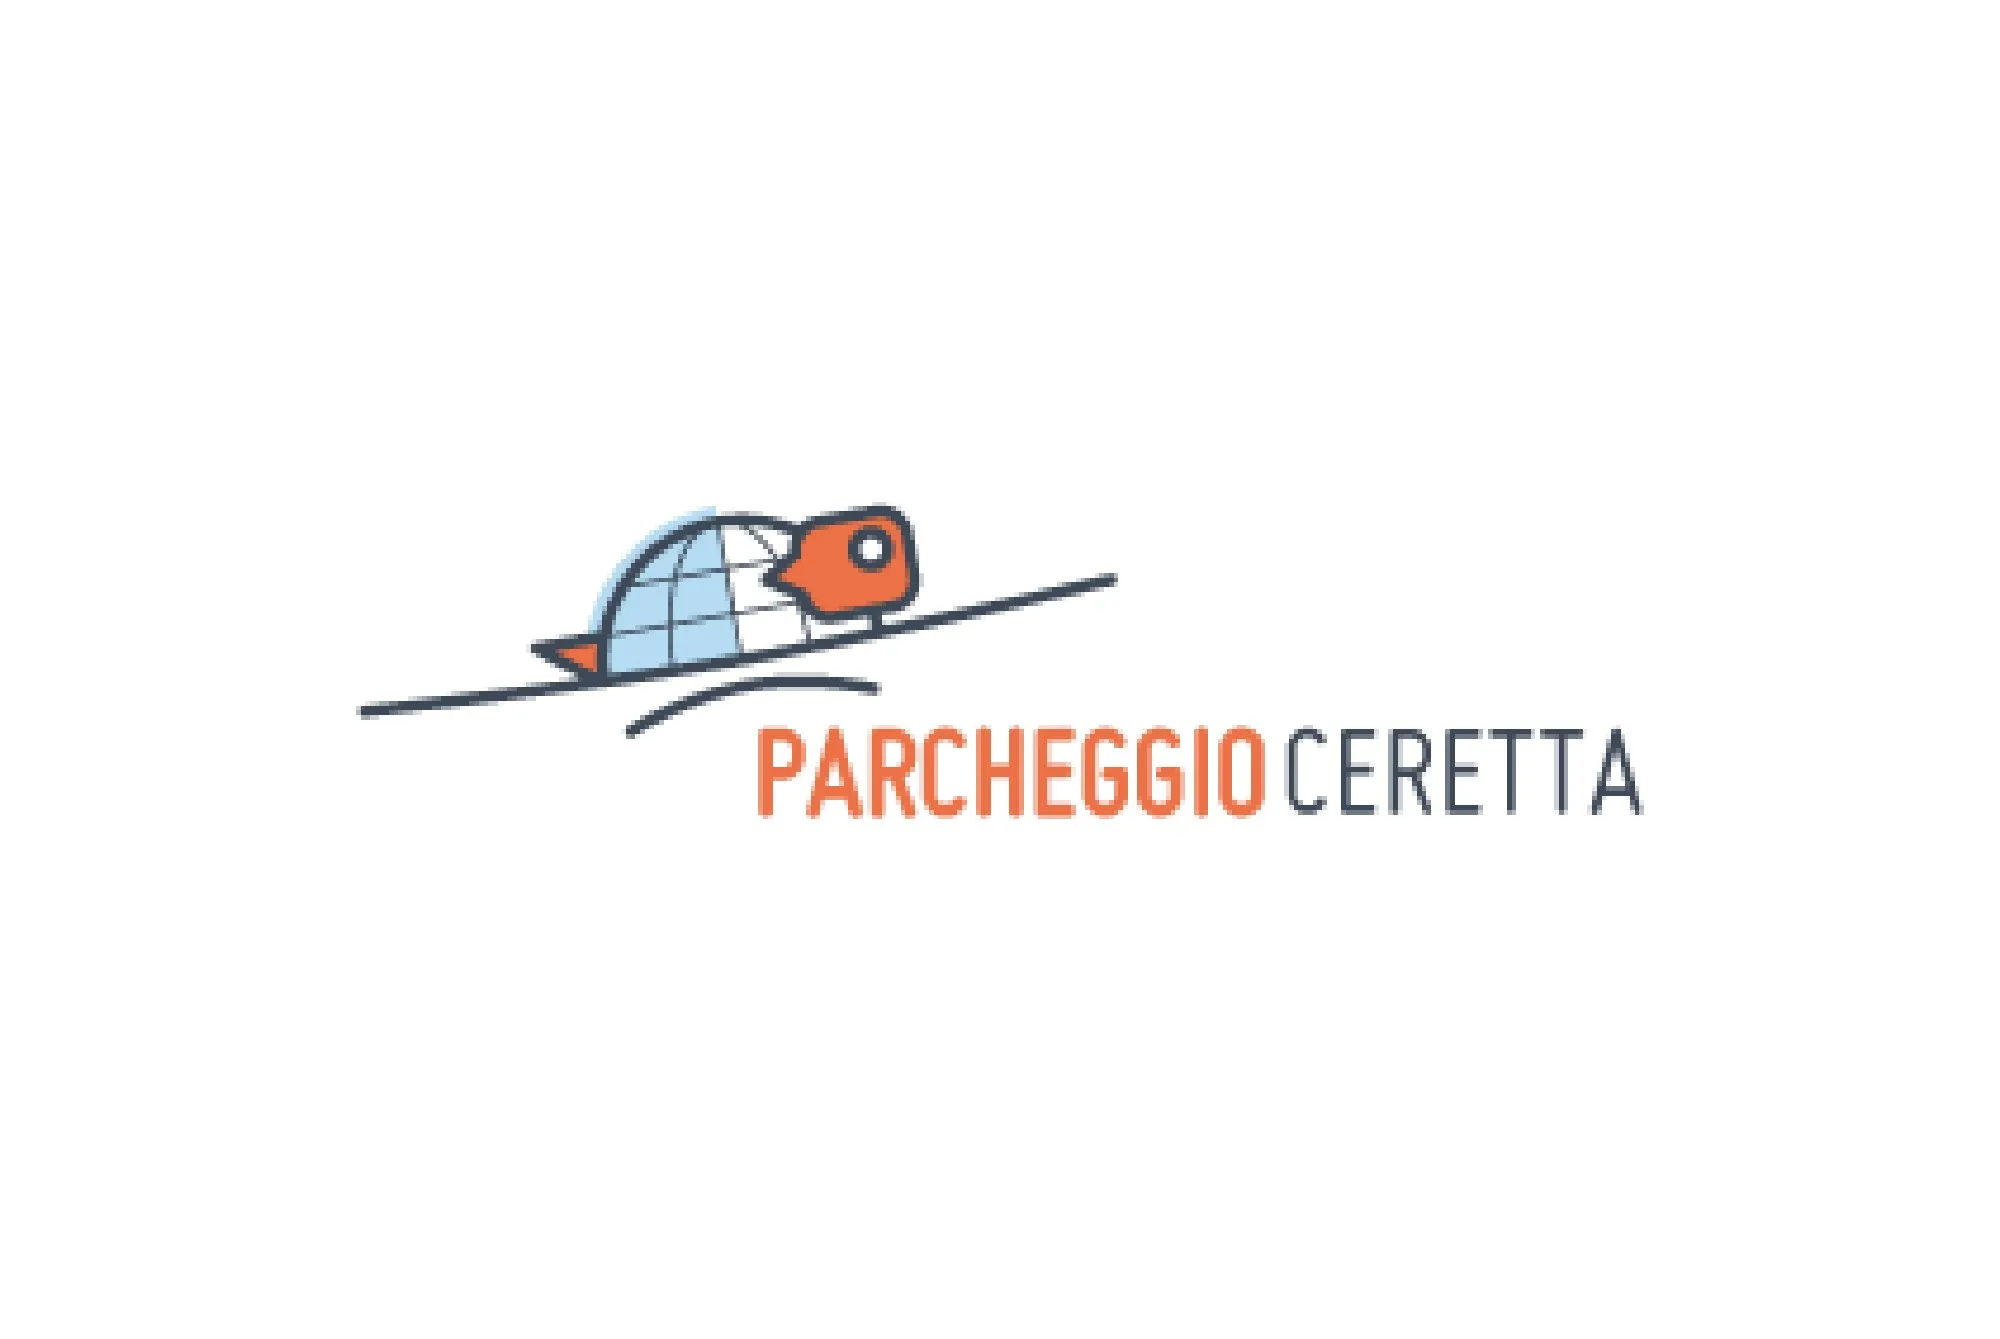 Parcheggio Ceretta (Paga in parcheggio) - Parcheggio Aeroporto Torino - picture 1